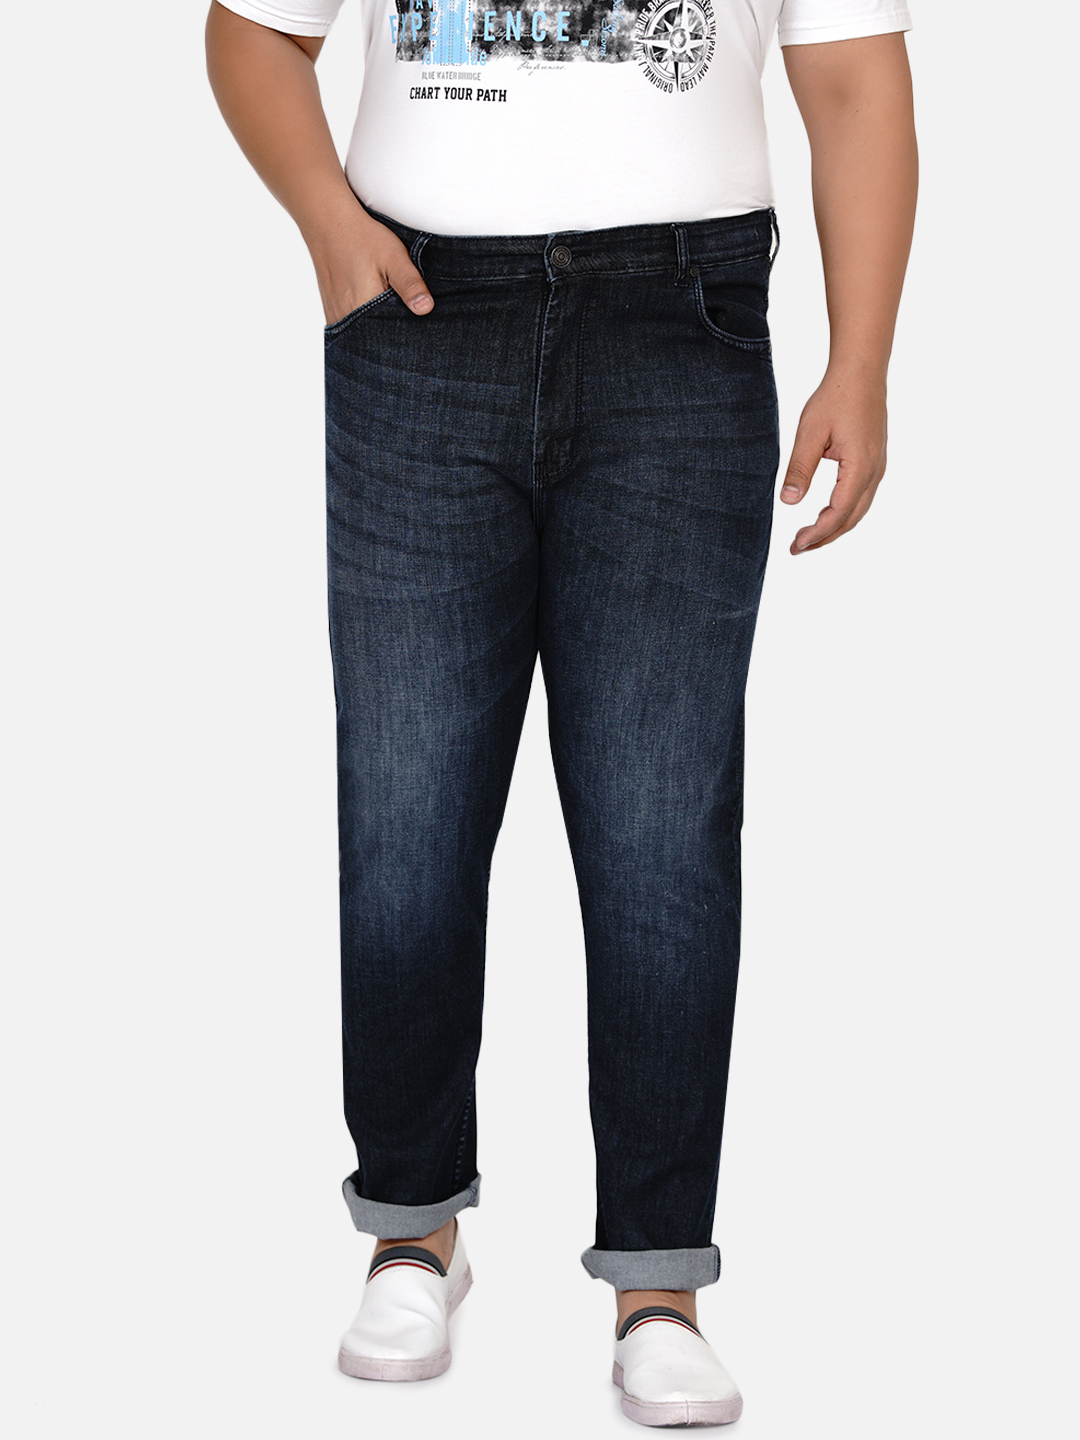 affordables/jeans/EJPJ25004/ejpj25004-3.jpg